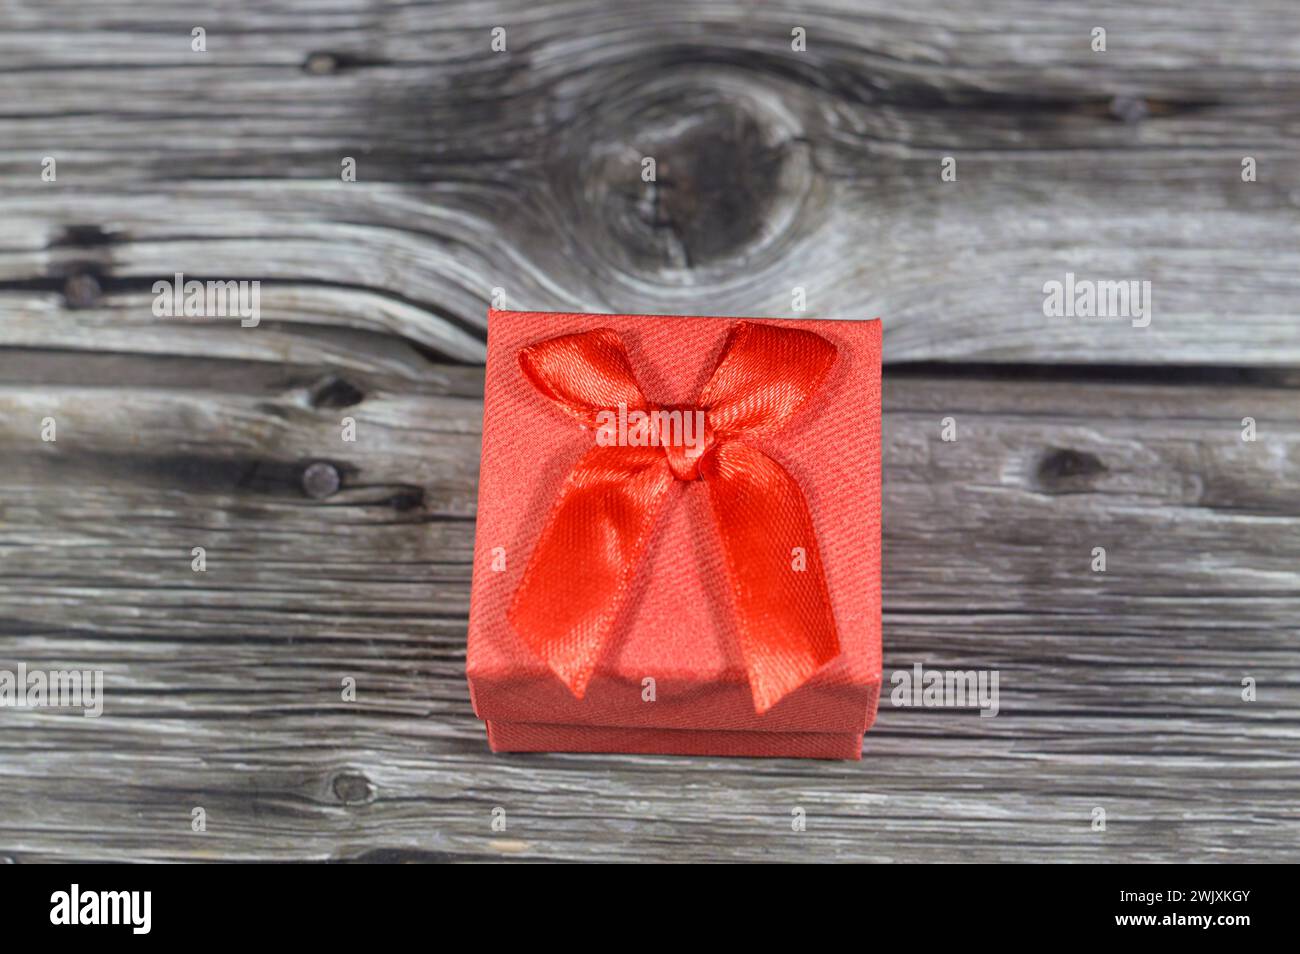 Eine kleine rote Geschenkbox für Edelmetalle wie Goldringe, Ohrringe, Diamantringe, kleines Geschenkpaket für Heiratsanträge und wertvolle Geschenke für j Stockfoto